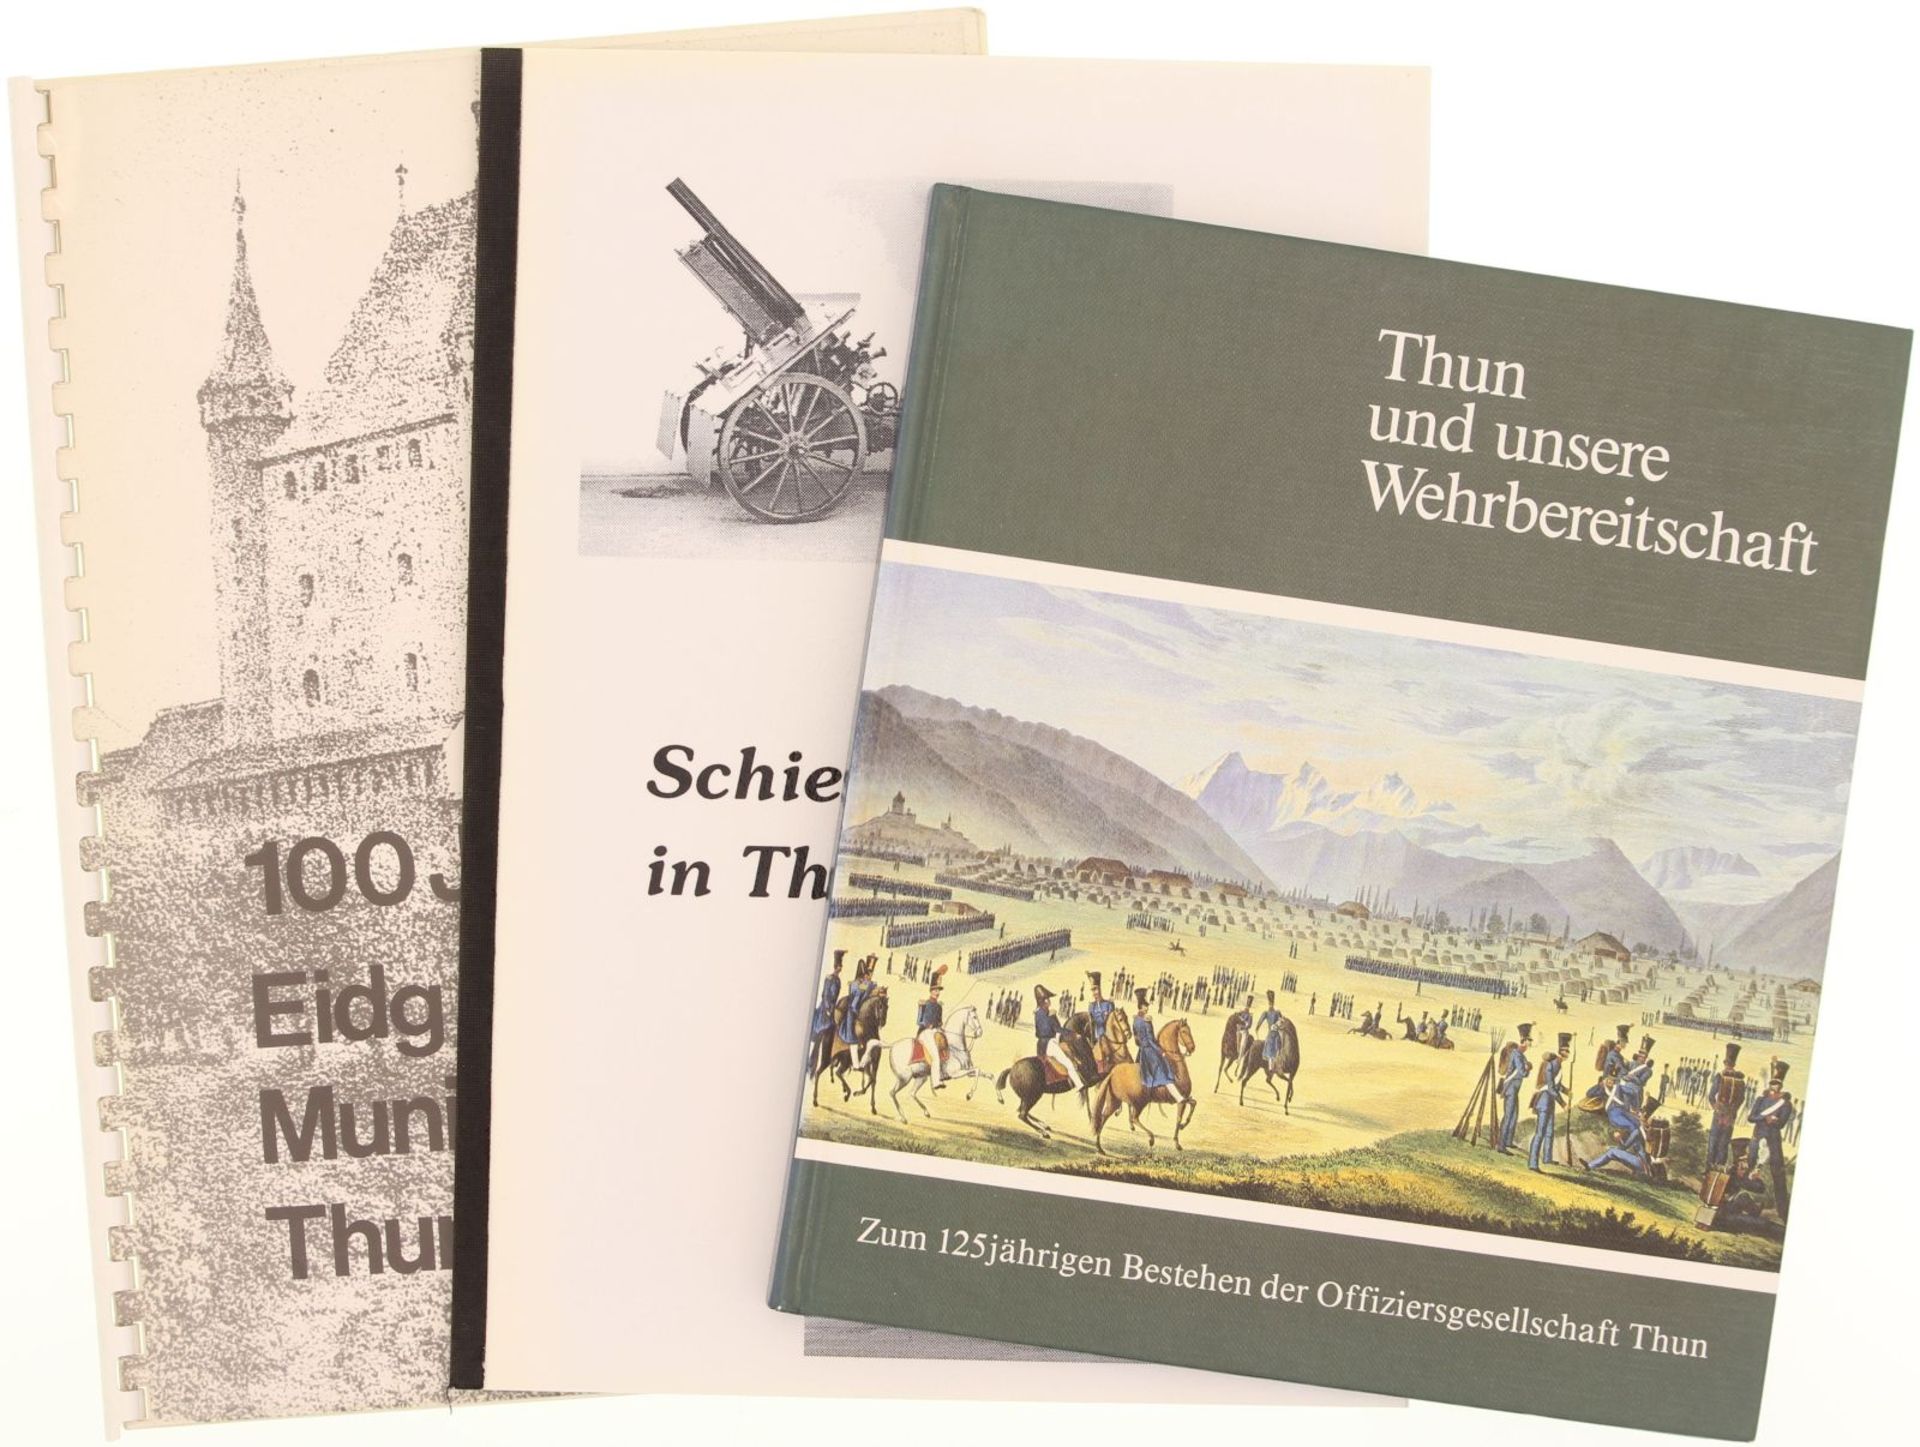 Konvolut von 3 Publikationen Thun: 1. "Thun unsere Wehrbereitschaft" zum 125jährigen Bestehen der